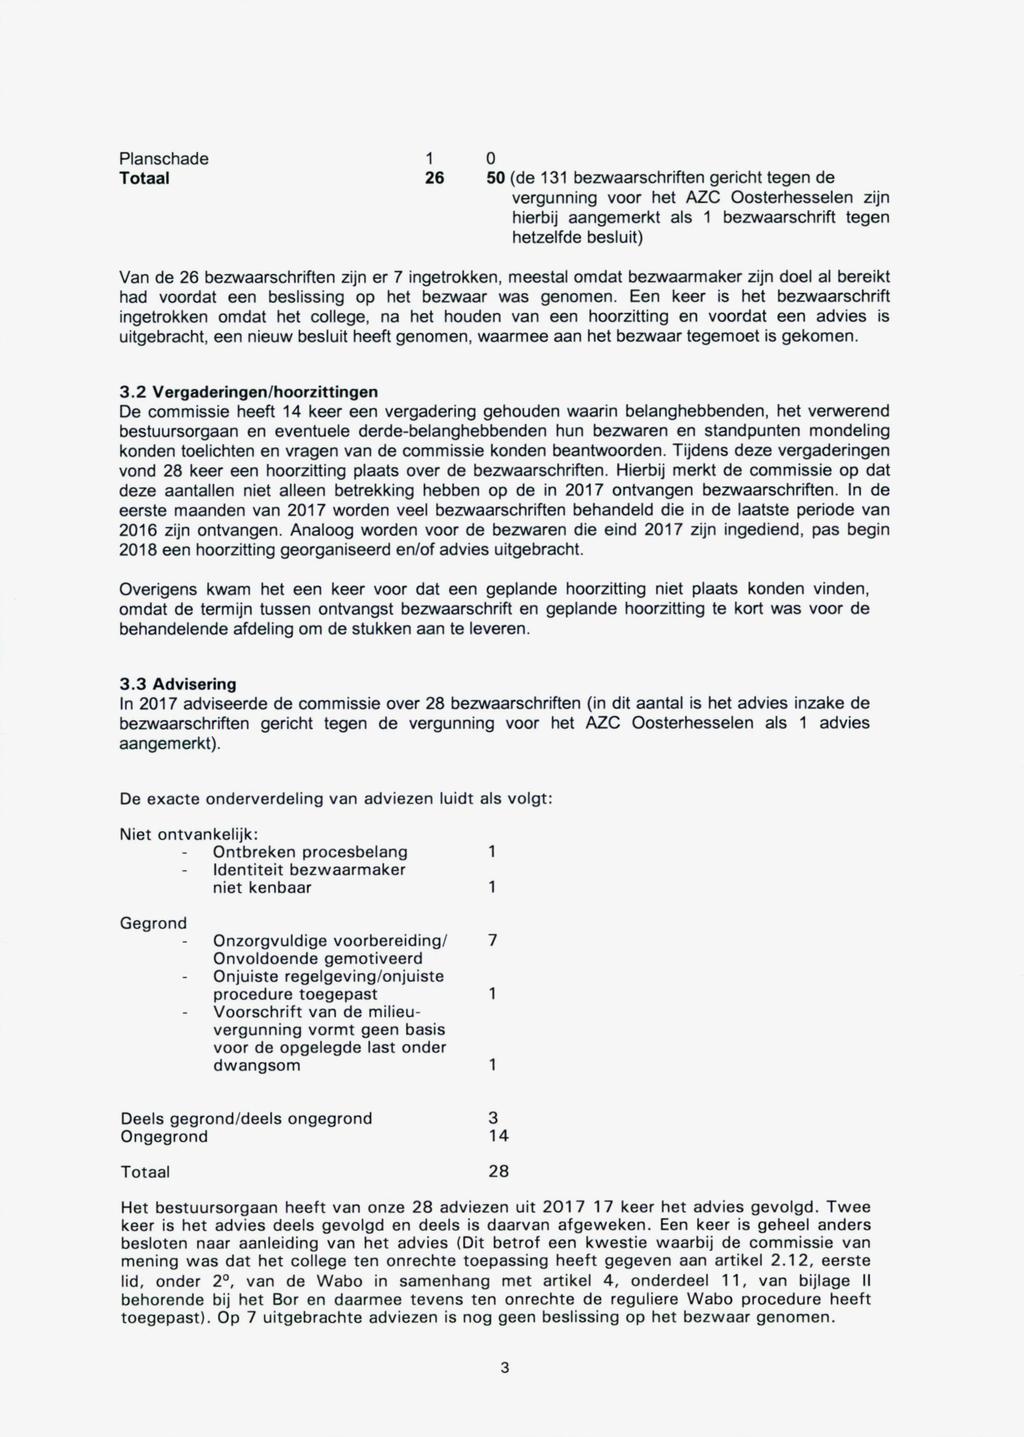 Planschade 1 O Totaal 26 50 (de 131 bezwaarschriften gericht tegen de vergunning voor het AZC Oosterhesselen zijn hierbij aangemerkt als 1 bezwaarschrift tegen hetzelfde besluit) Van de 26